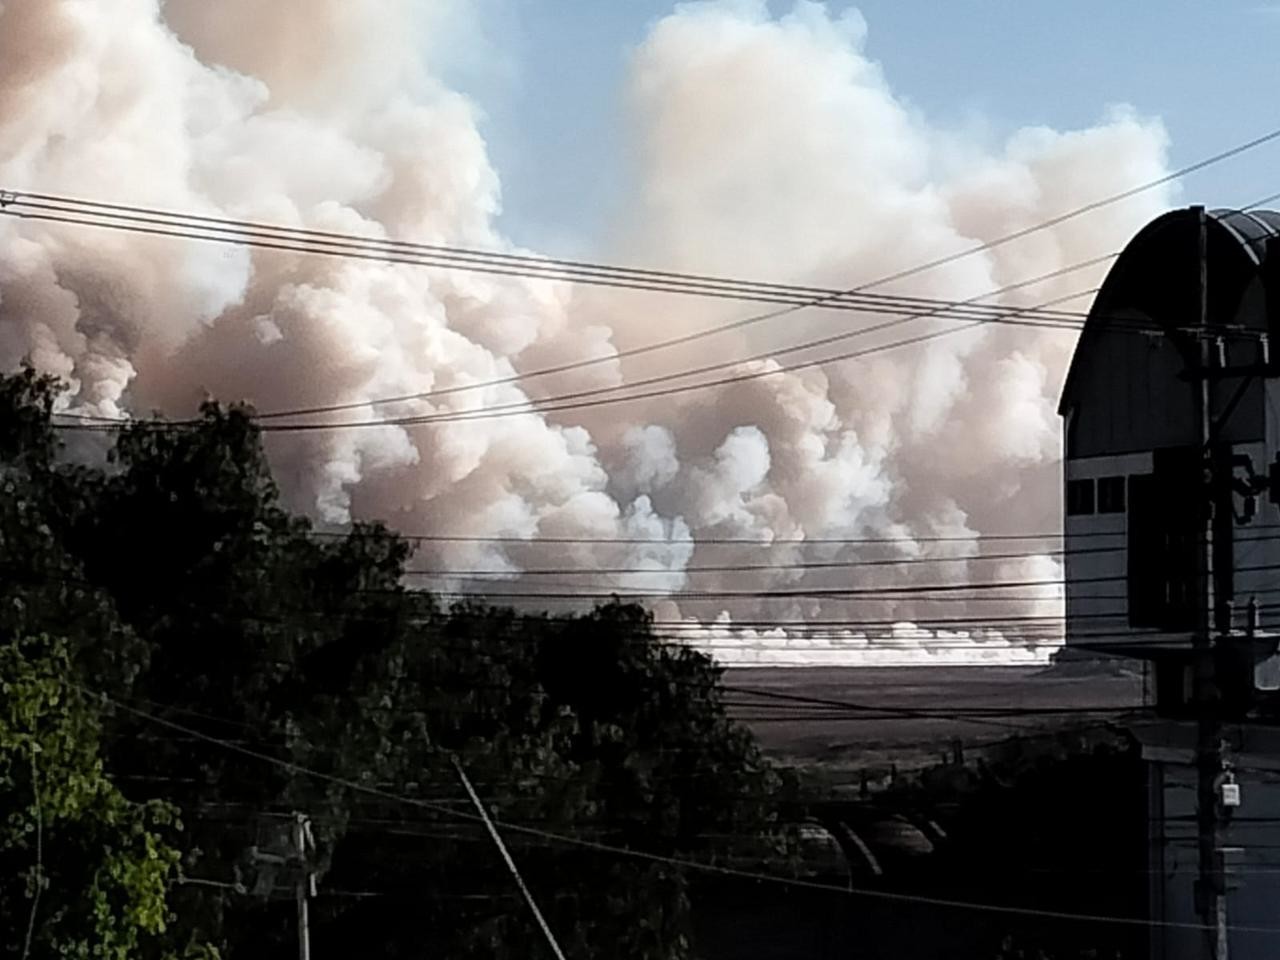 Las columnas de humo blanco se pueden apreciar desde distintos puntos de Zumpango causando alarma entre los habitantes. Foto: RRSS